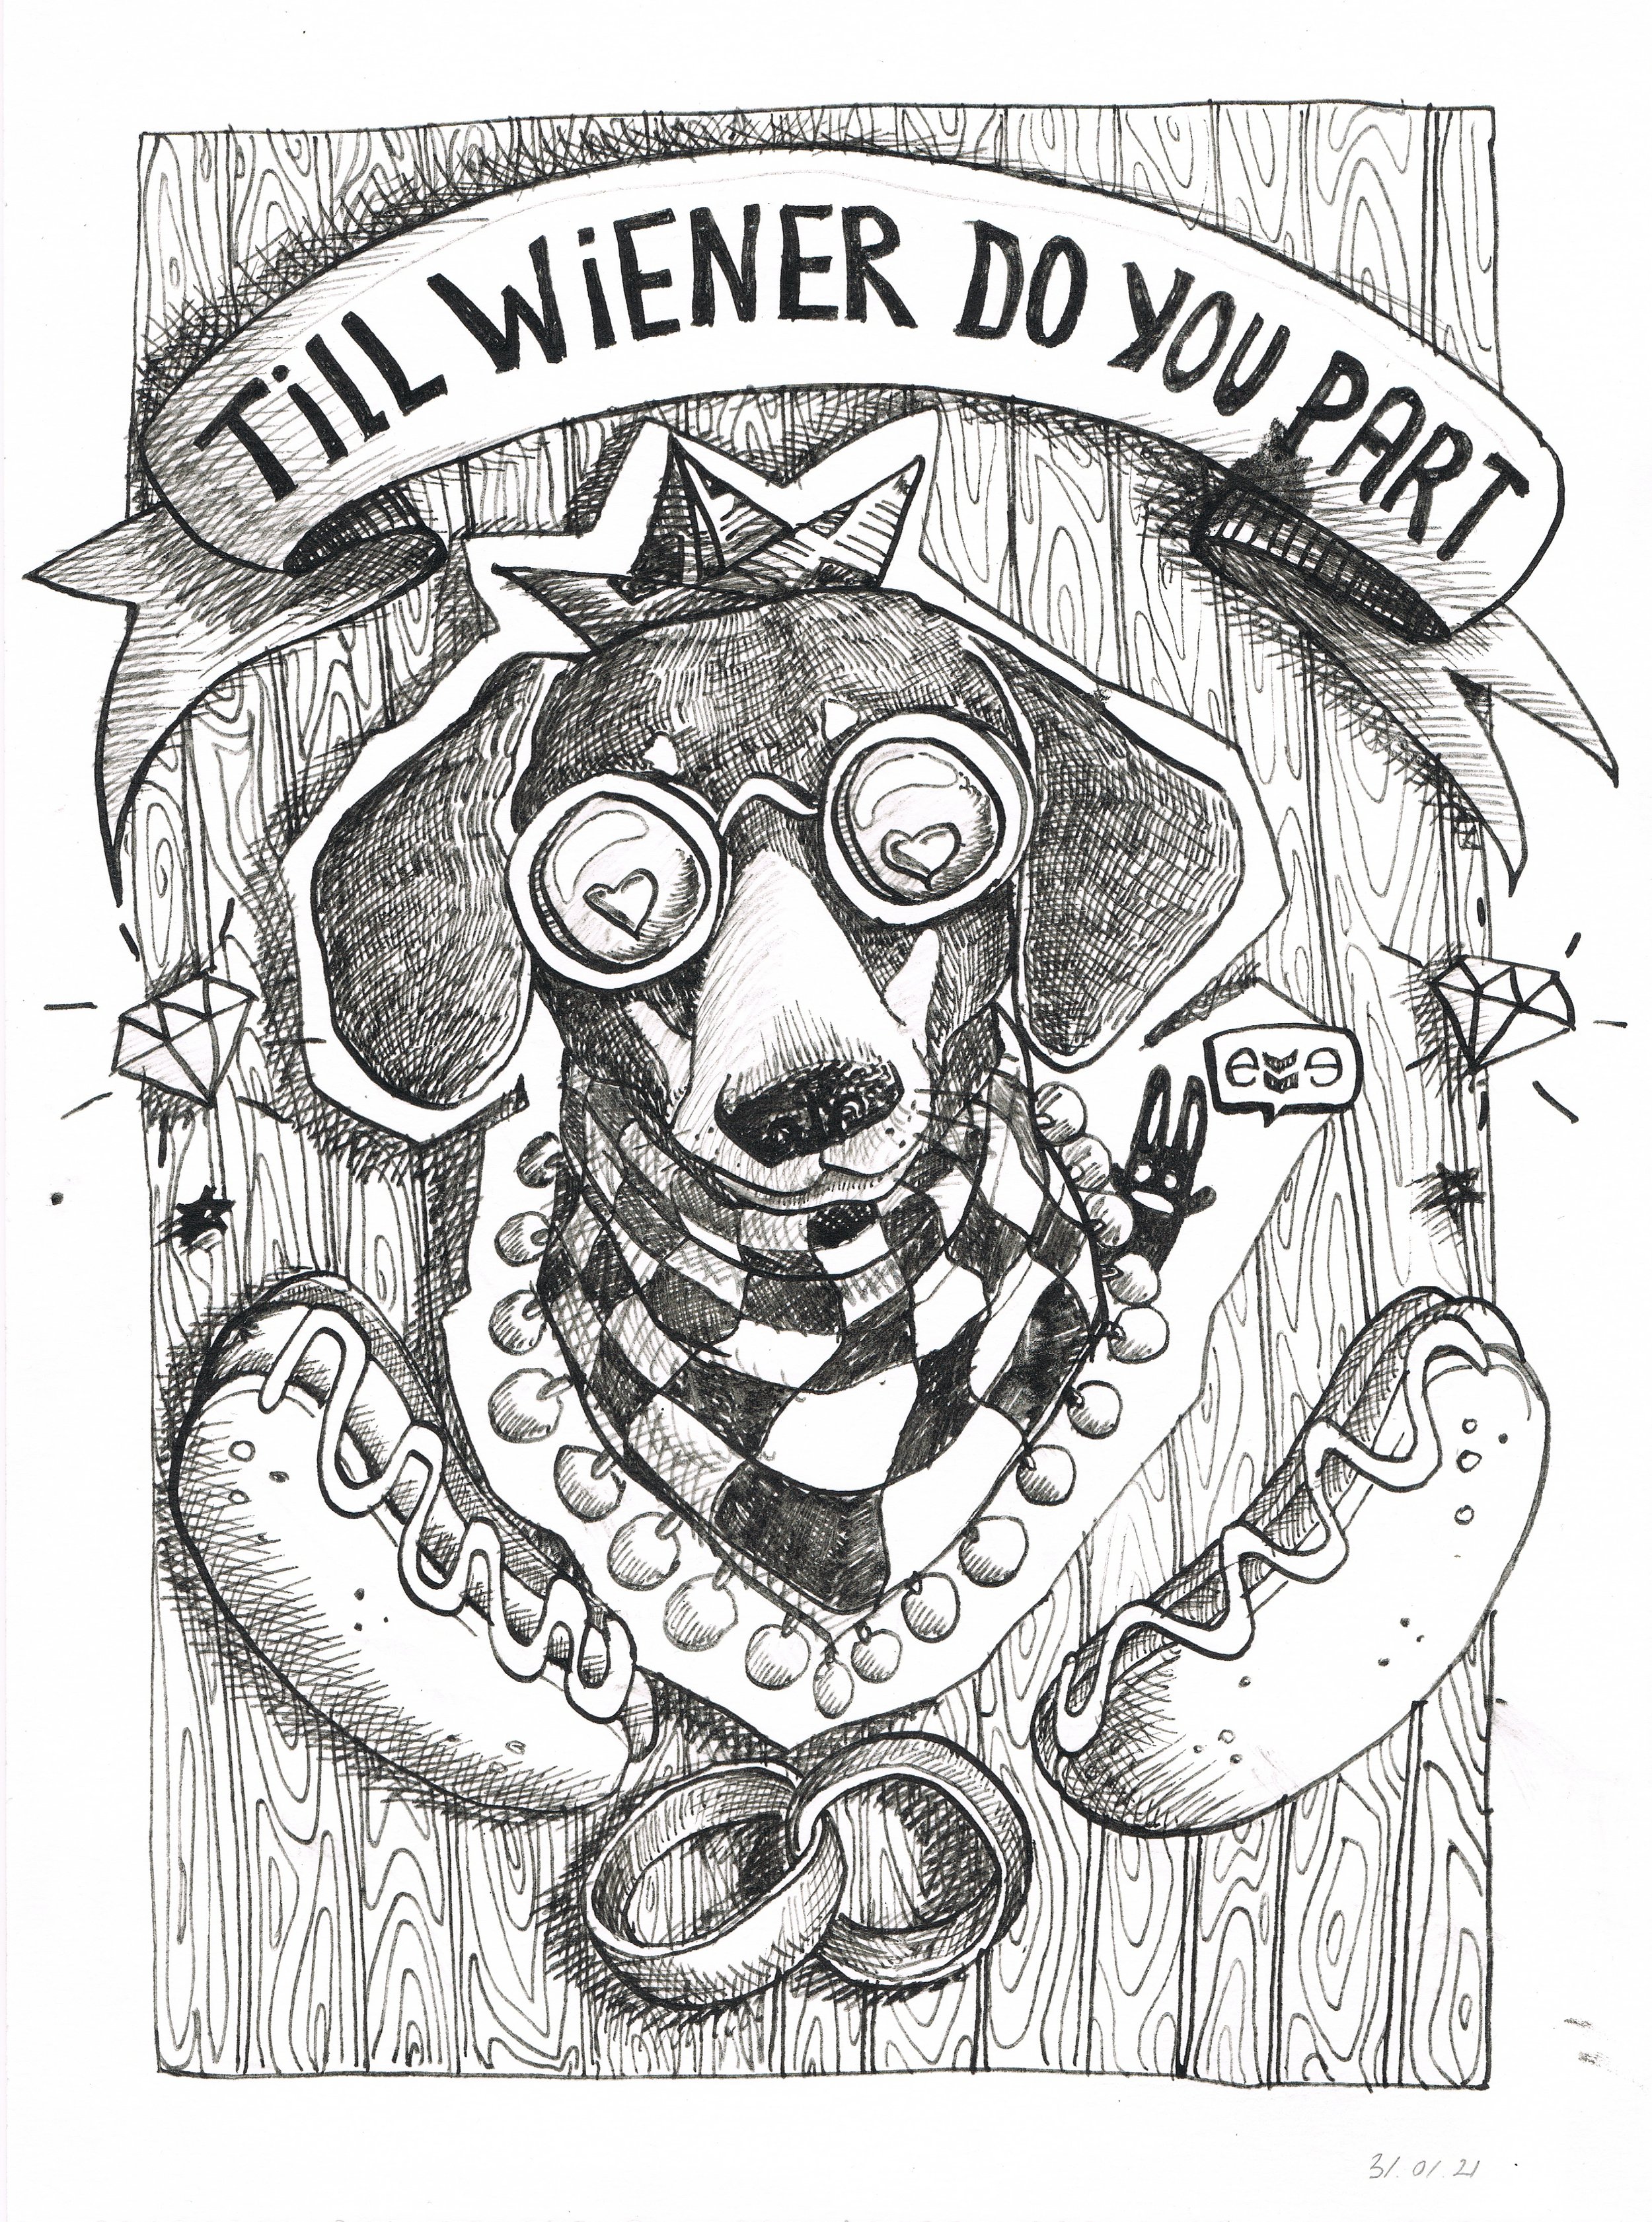 Till wiener do you part